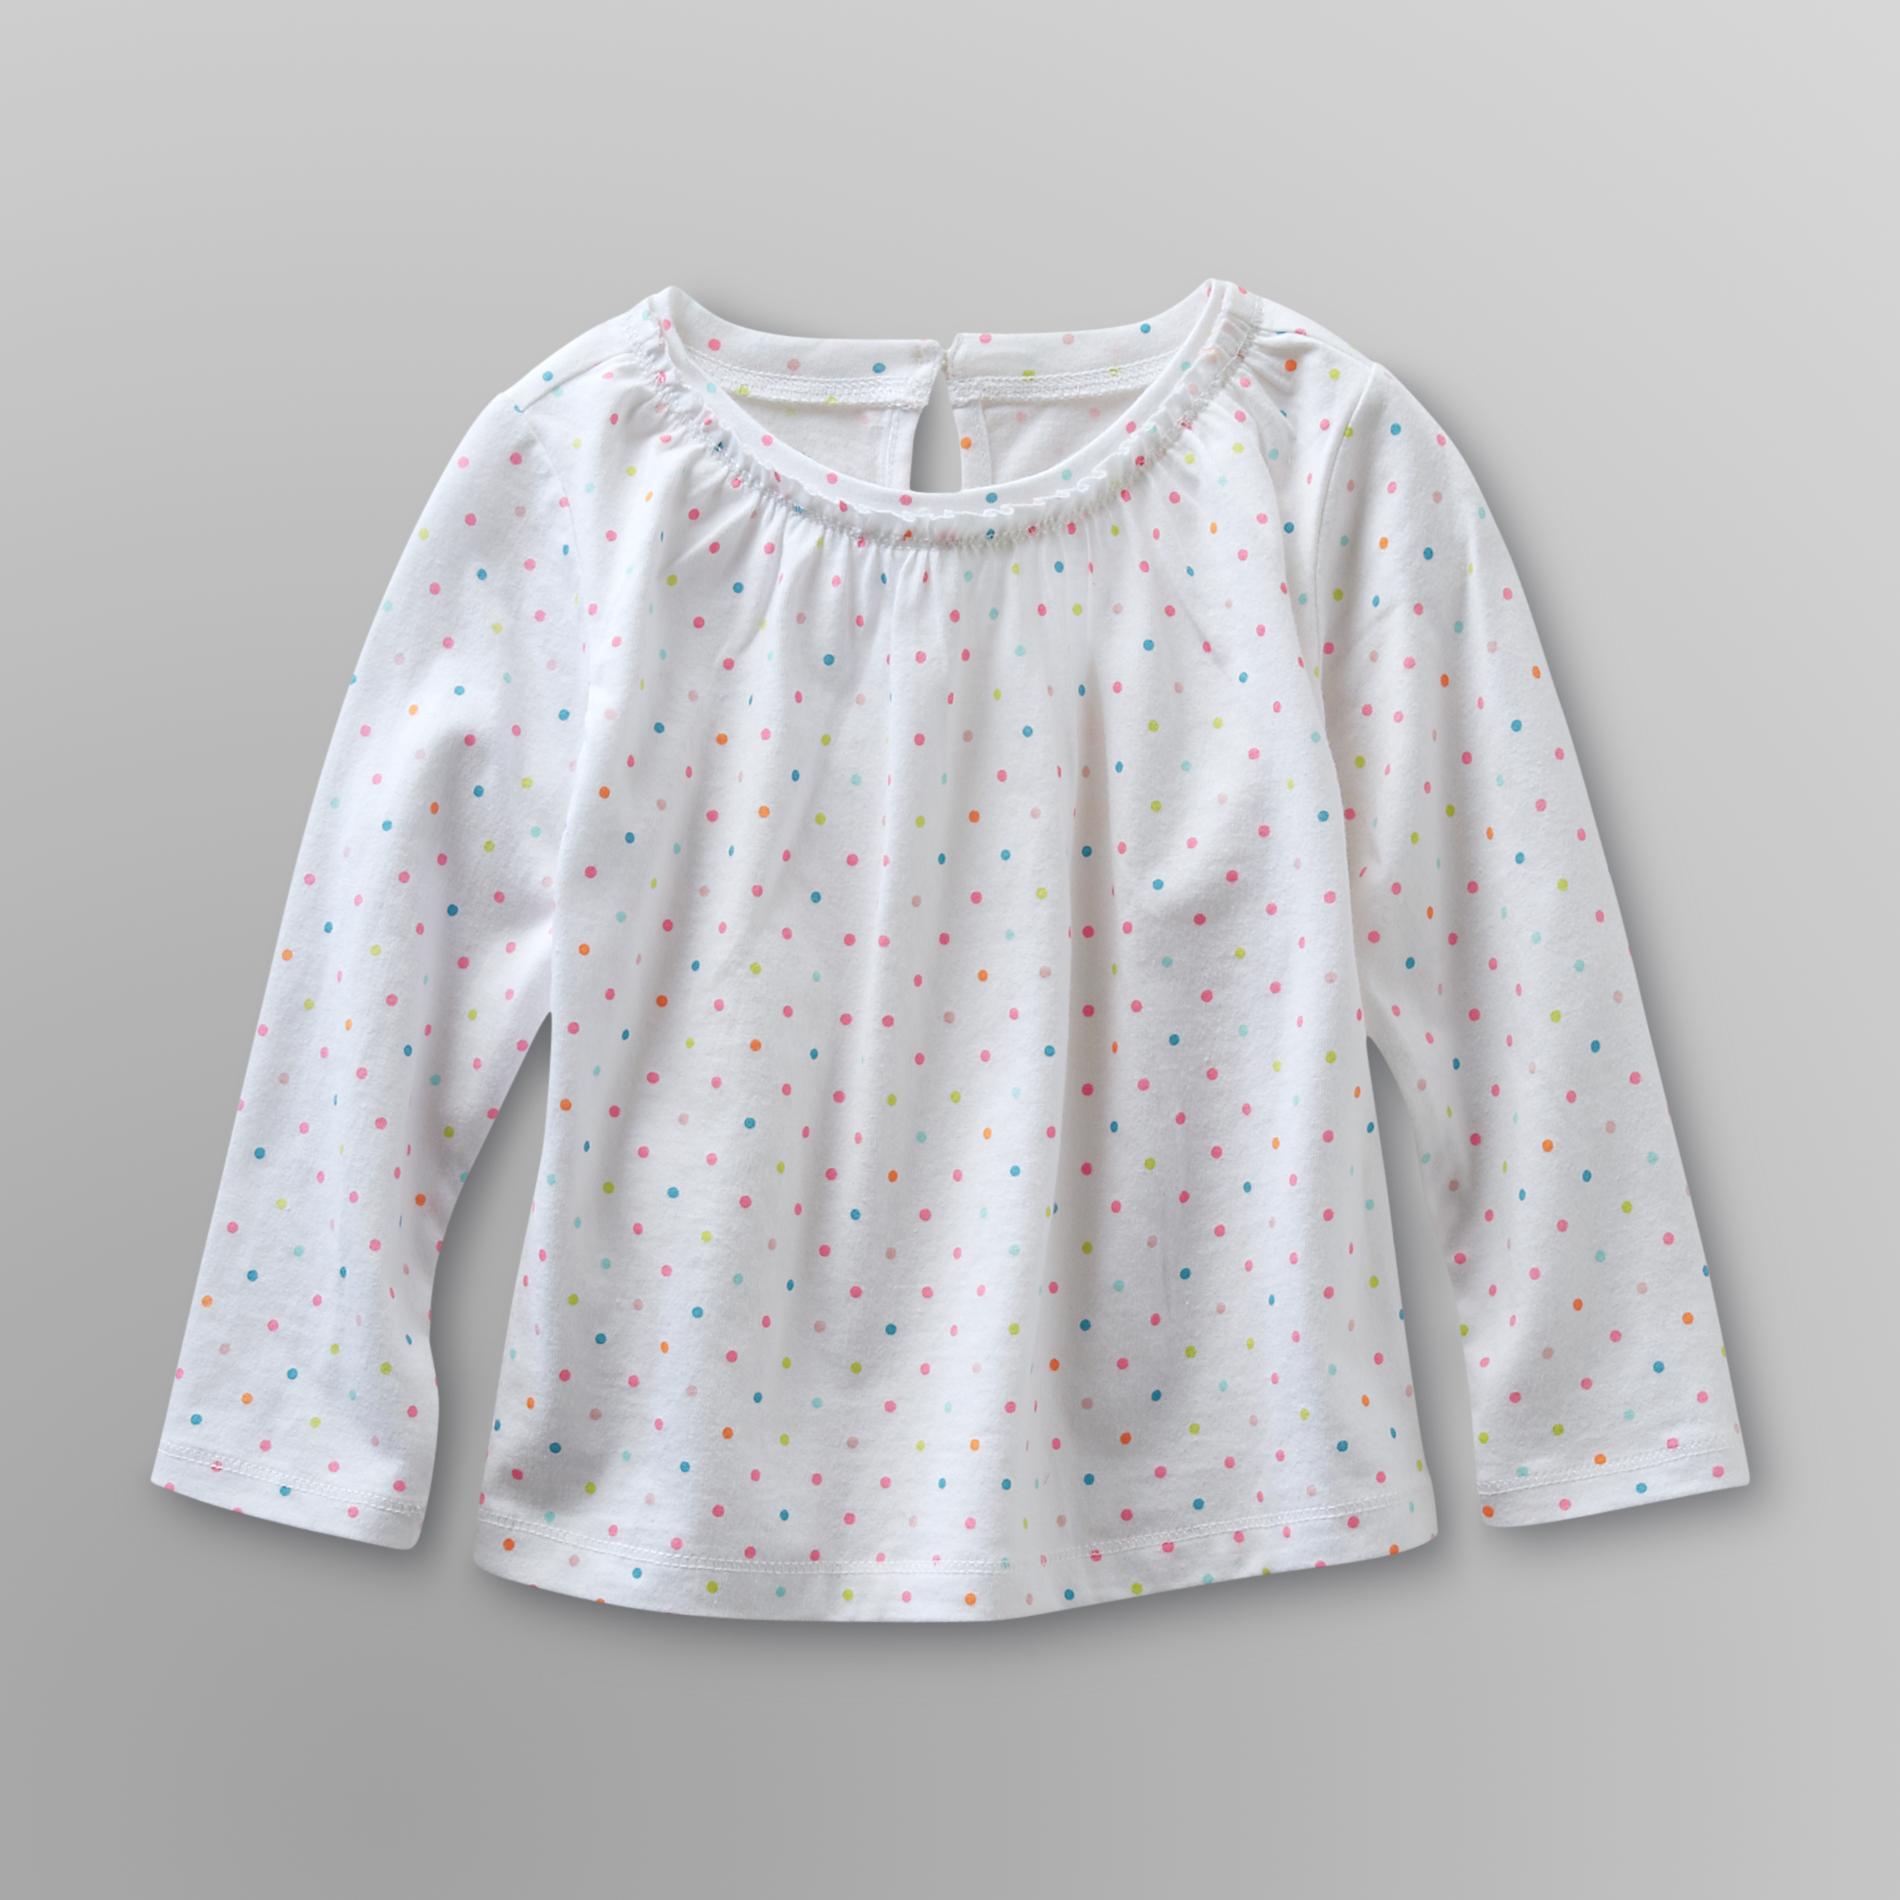 WonderKids Infant & Toddler Girl's T-Shirt - Polka Dot